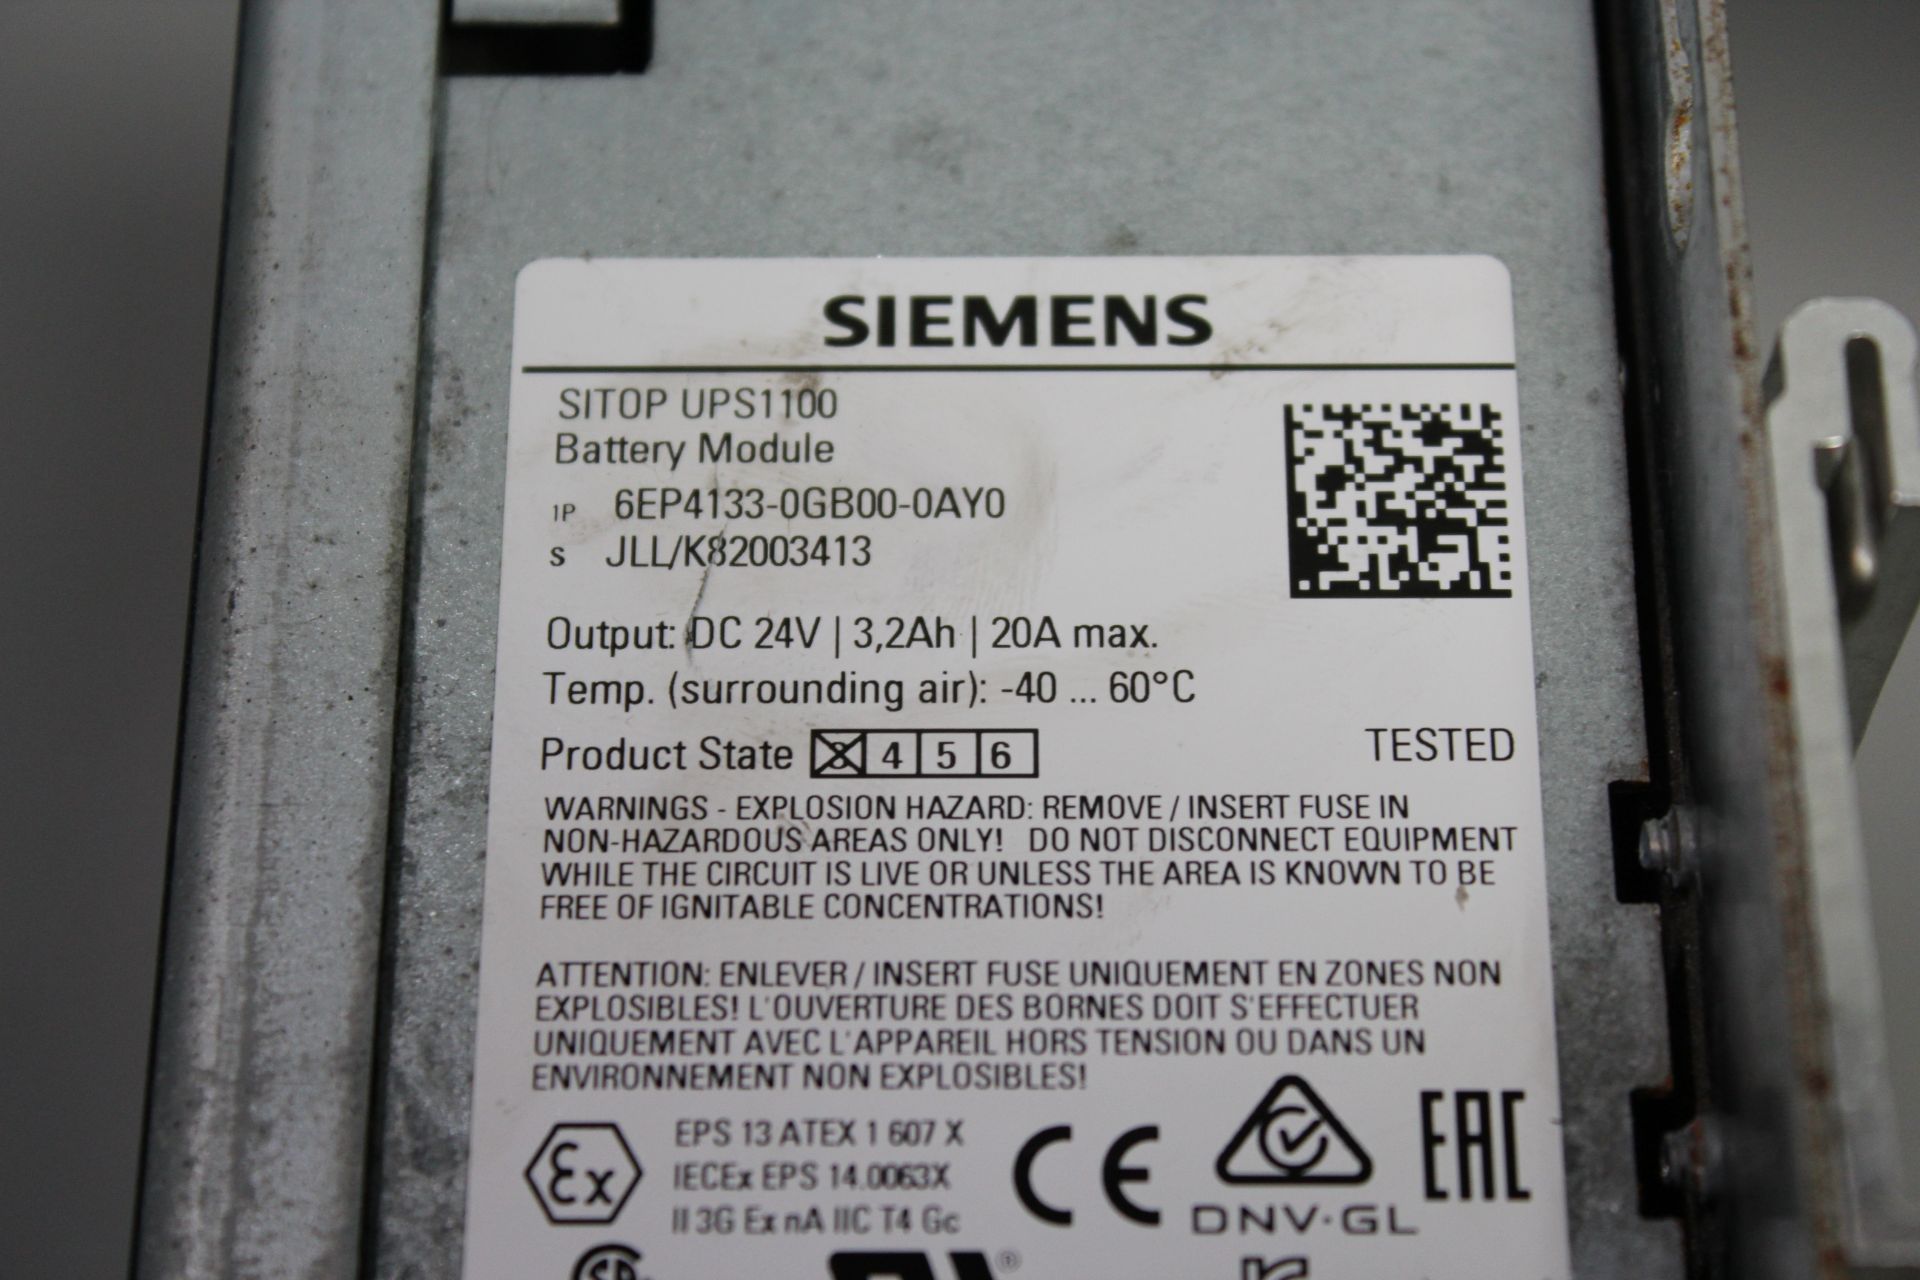 SIEMENS SITOP UPS 1100 - Image 3 of 3